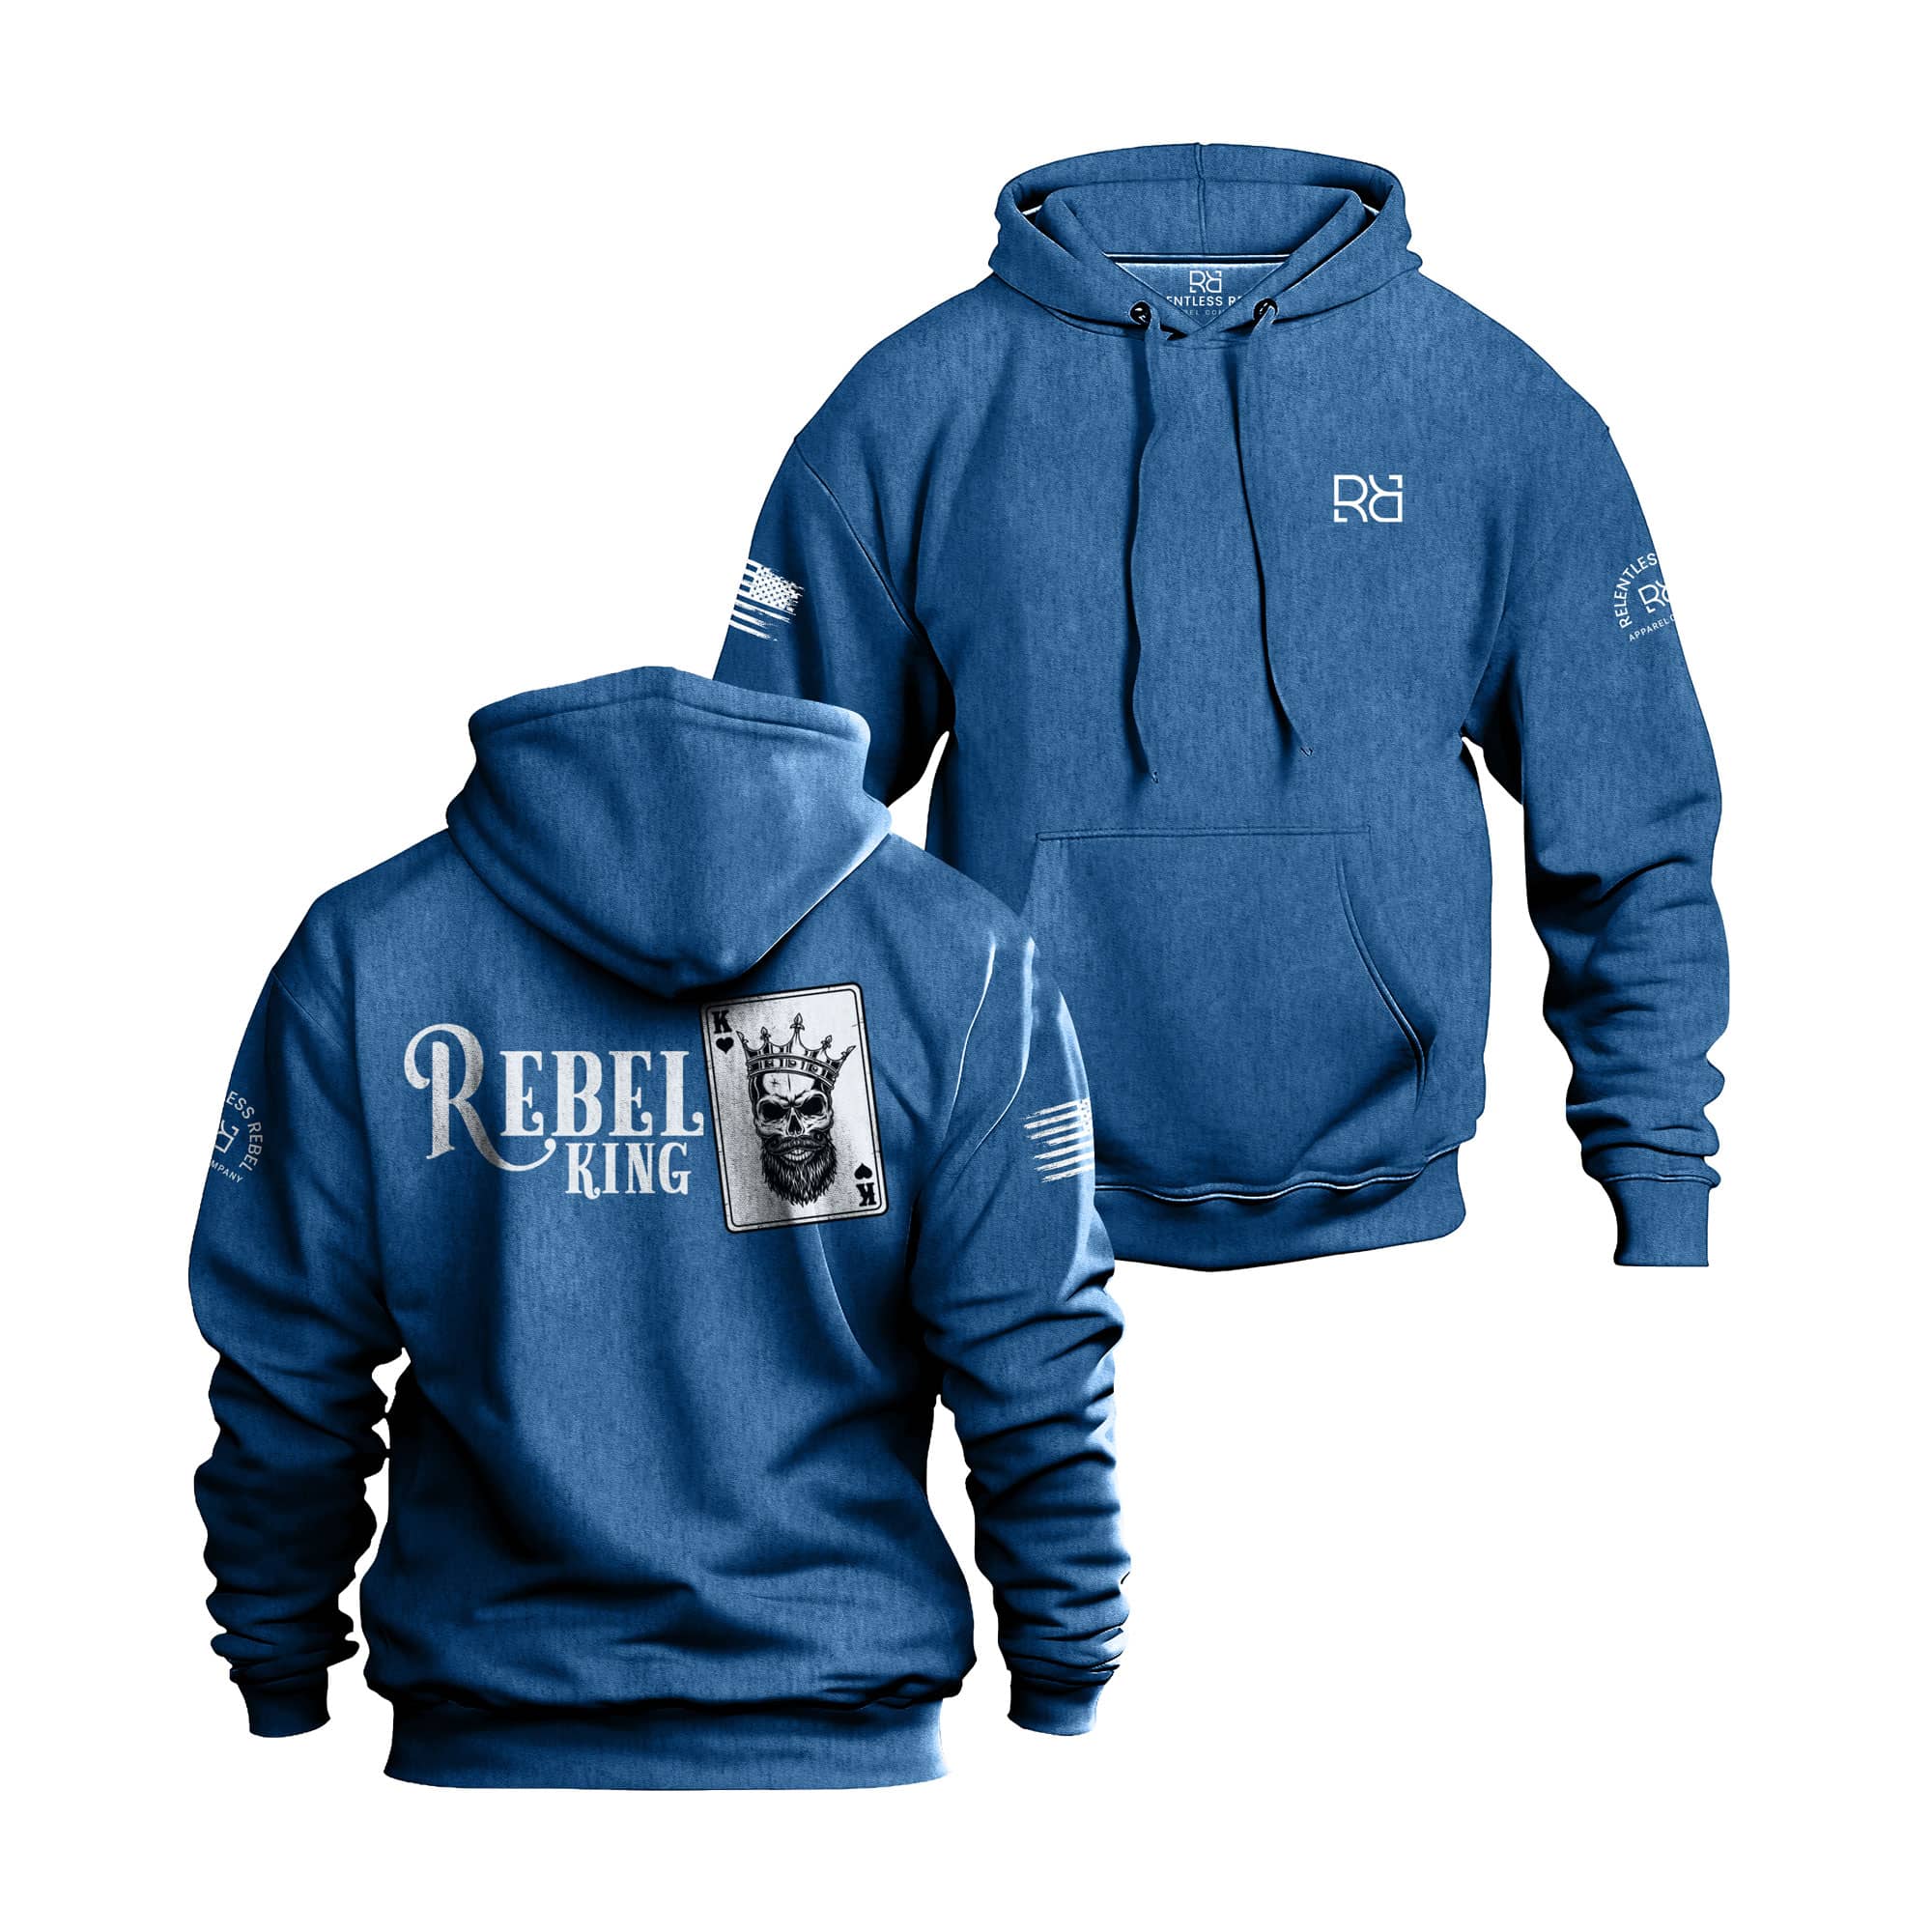 Rebel King back design hoodie